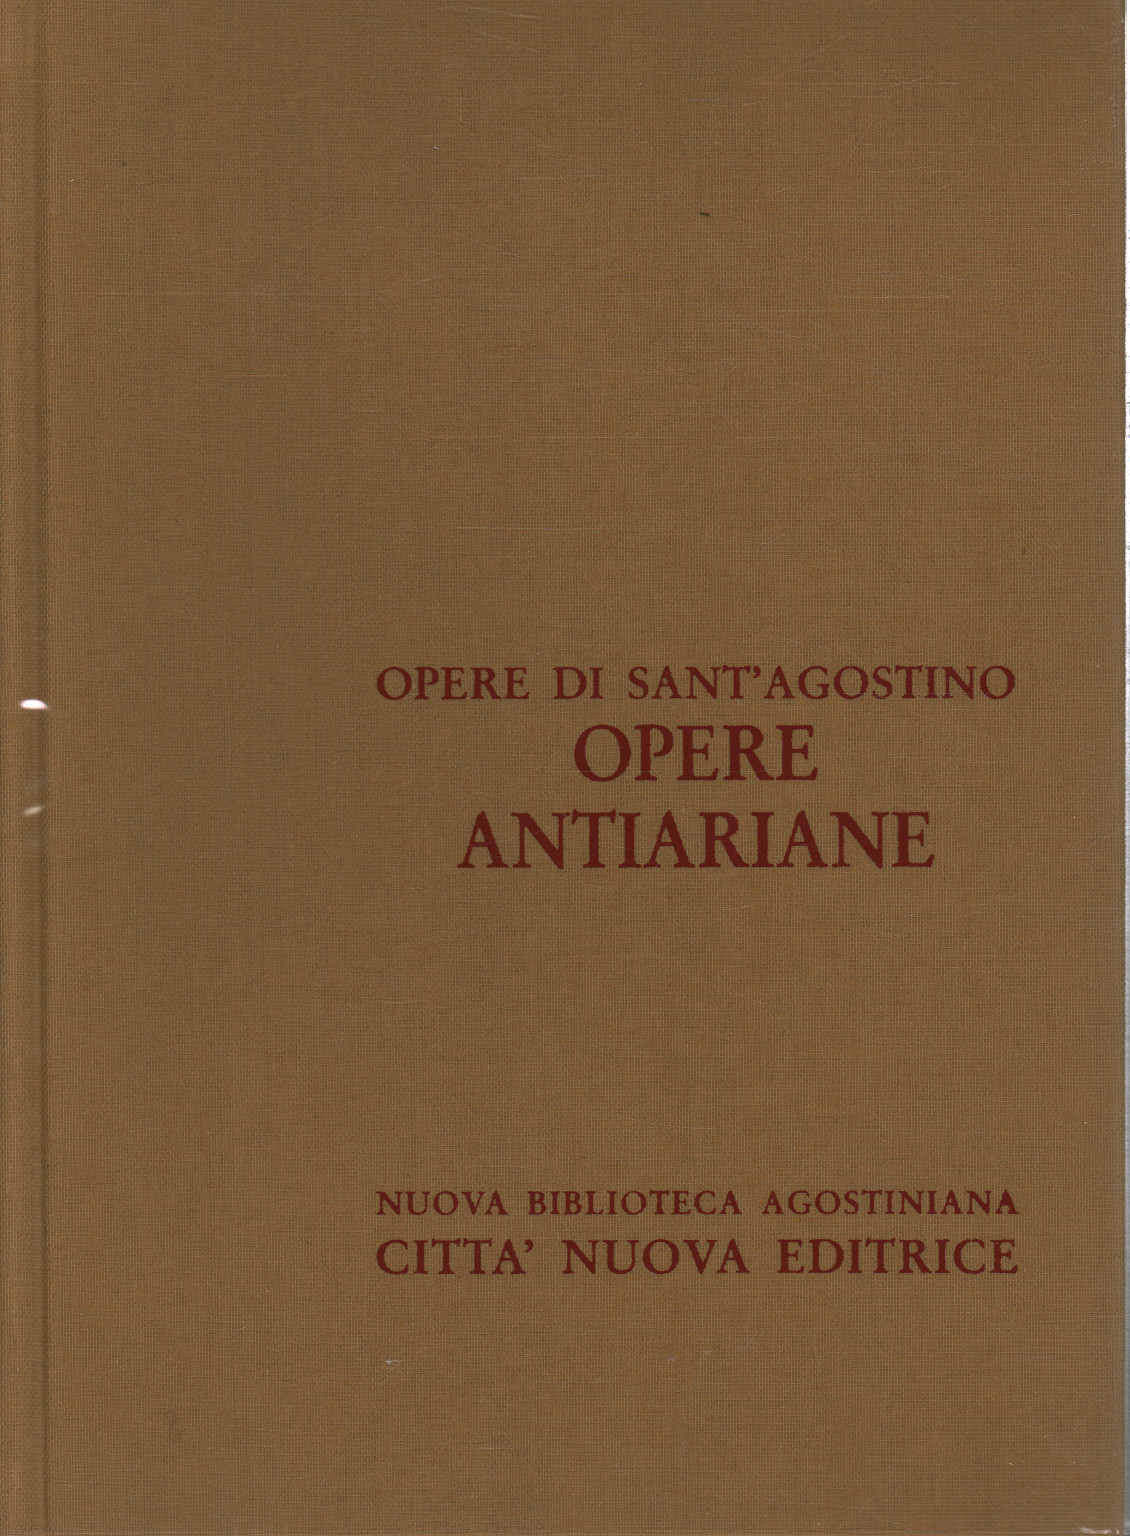 Opere antiariane (Volume XII/2)